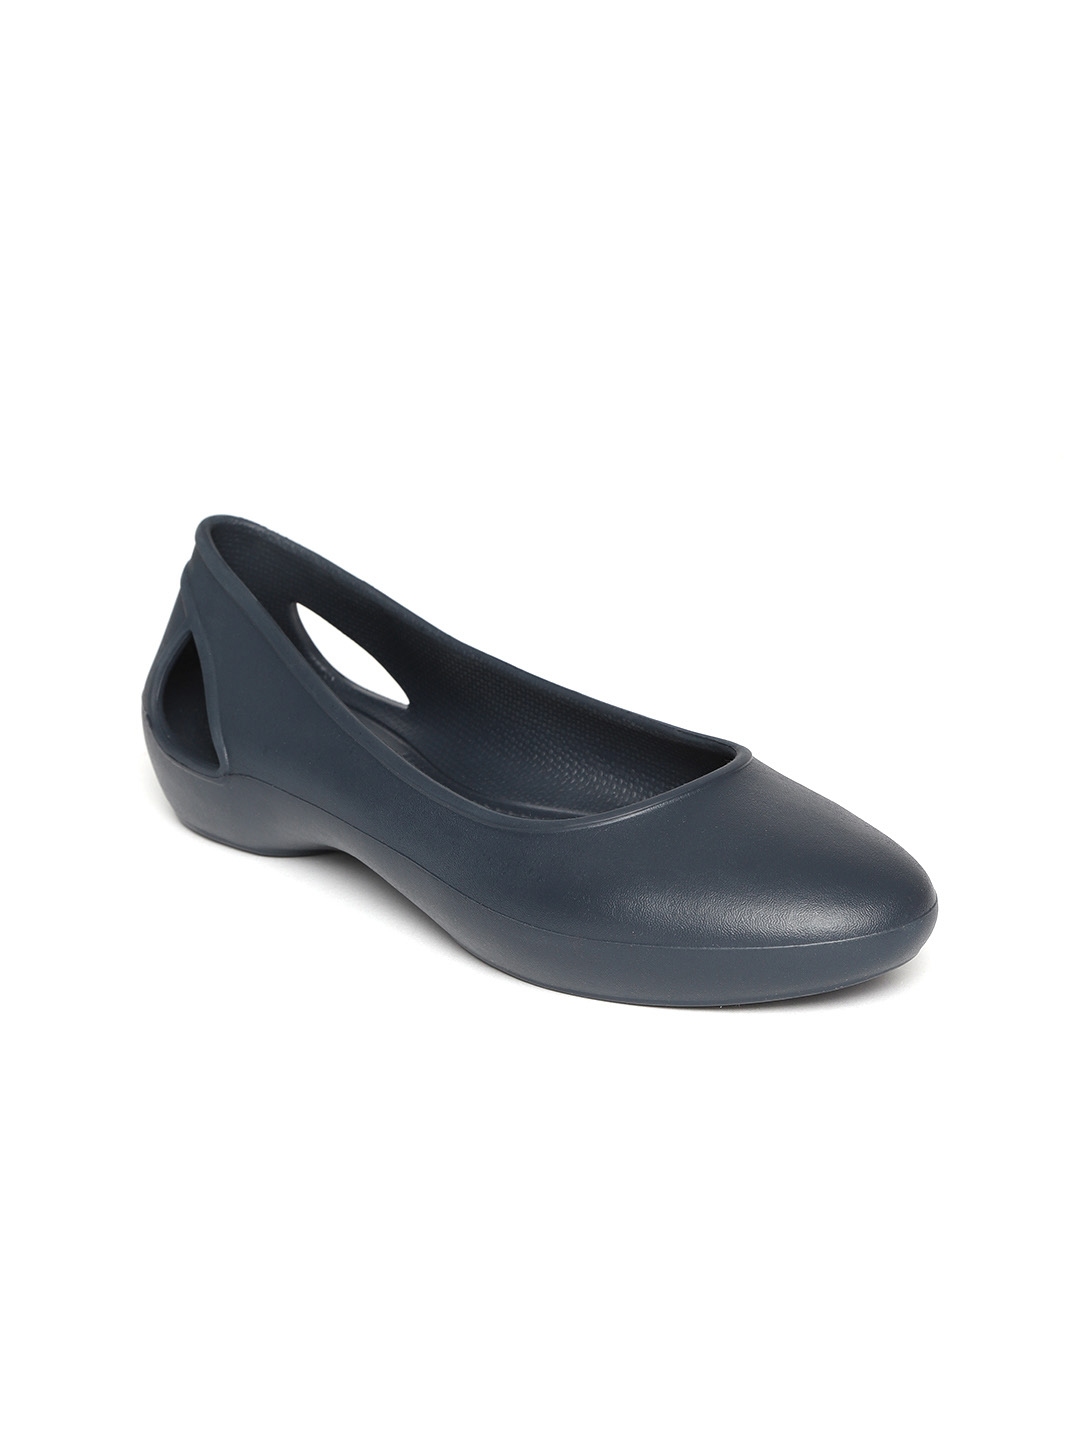 Buy Crocs Women Navy Blue Solid Ballerinas - Flats for Women 7900239 ...